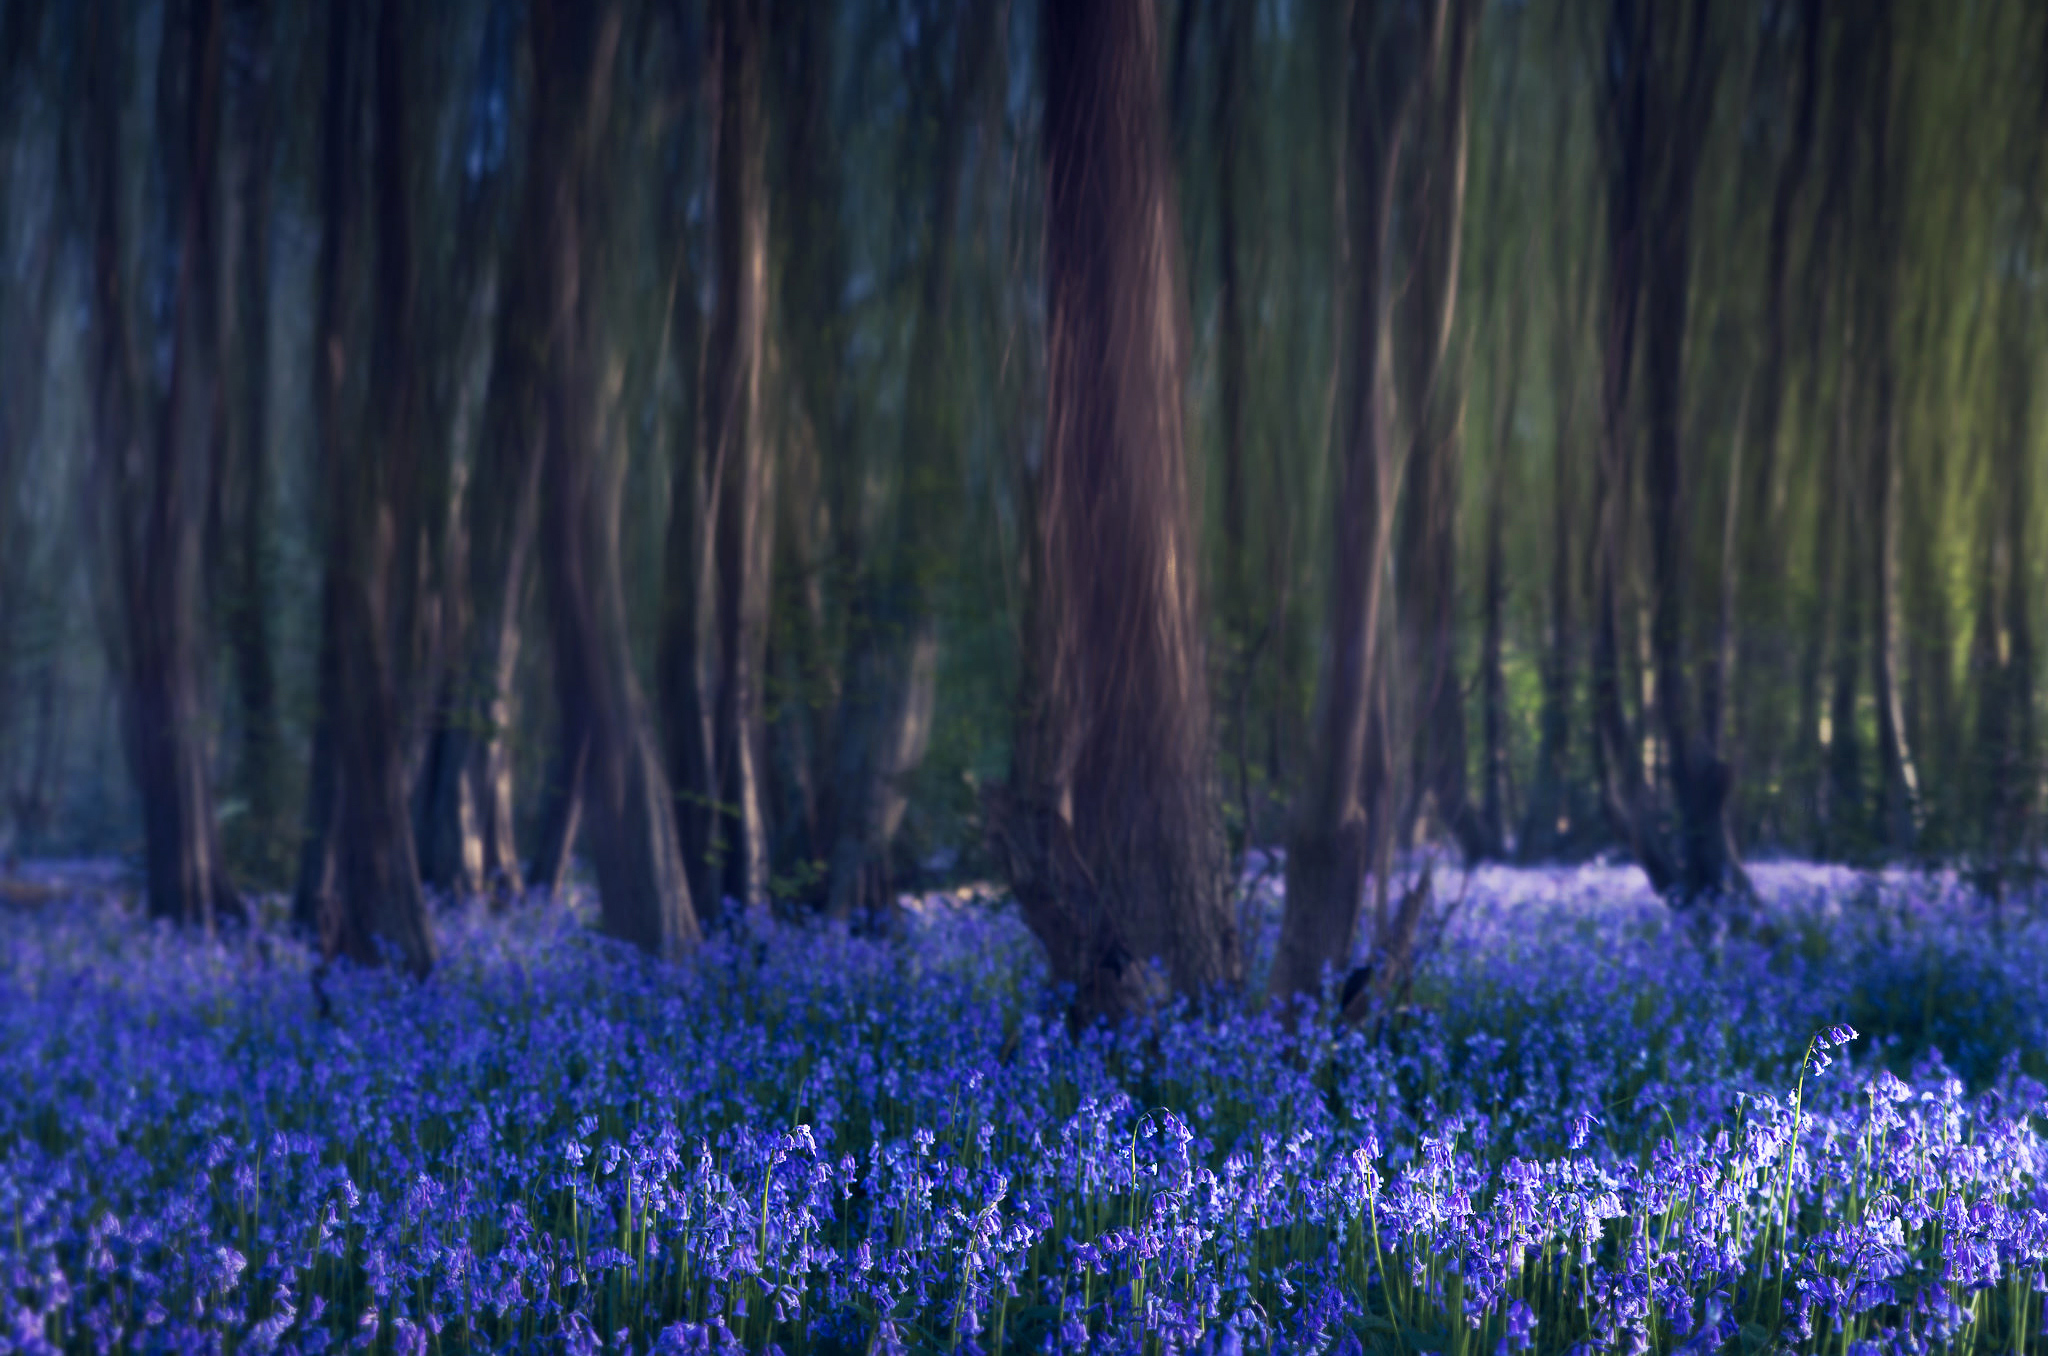 Колокольчик цветок в лесу. Лес Халлербос. Лес Халлербос Бельгия. Hallerbos - синий лес. Сказочный синий лес «Халлербос», Бельгия..